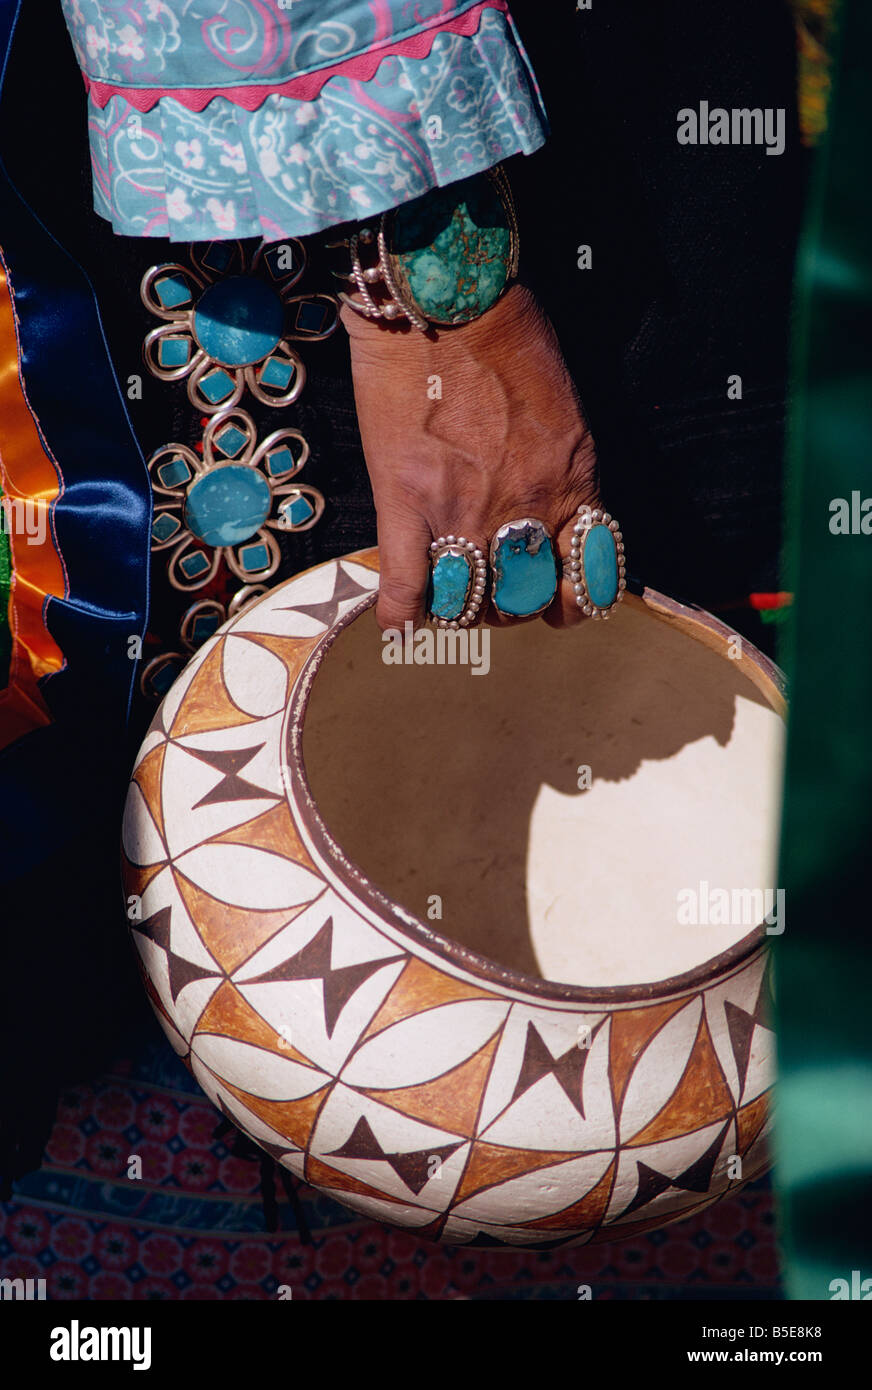 Cerca de turquesa joyas en la mano de un indio sosteniendo un cuenco decorado, Nuevo México, Estados Unidos, América del Norte Foto de stock